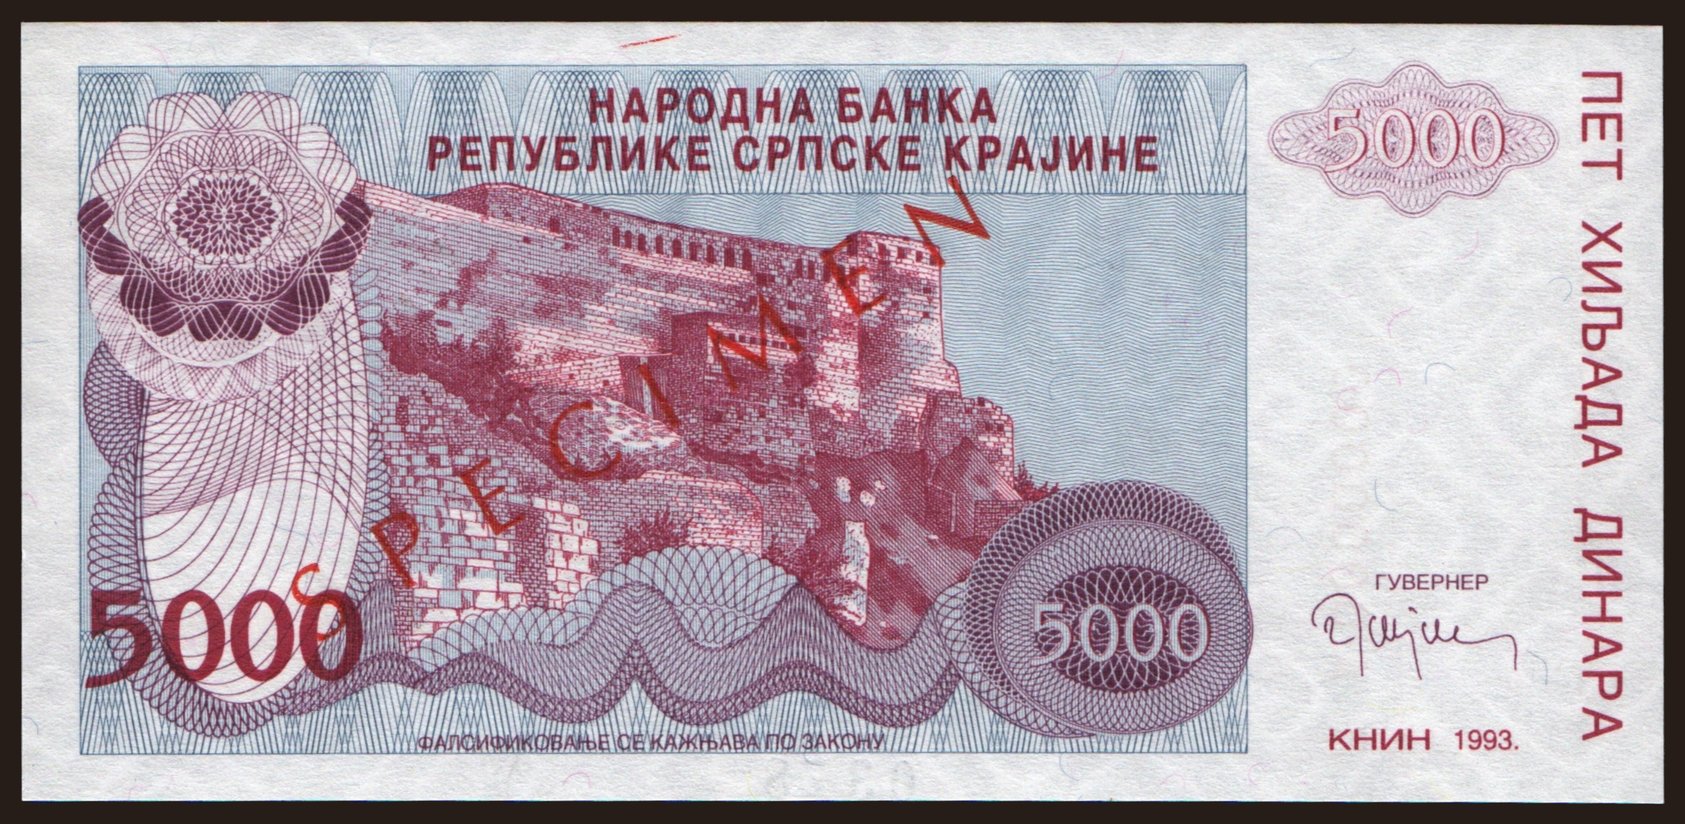 RSK, 5000 dinara, 1993, SPECIMEN